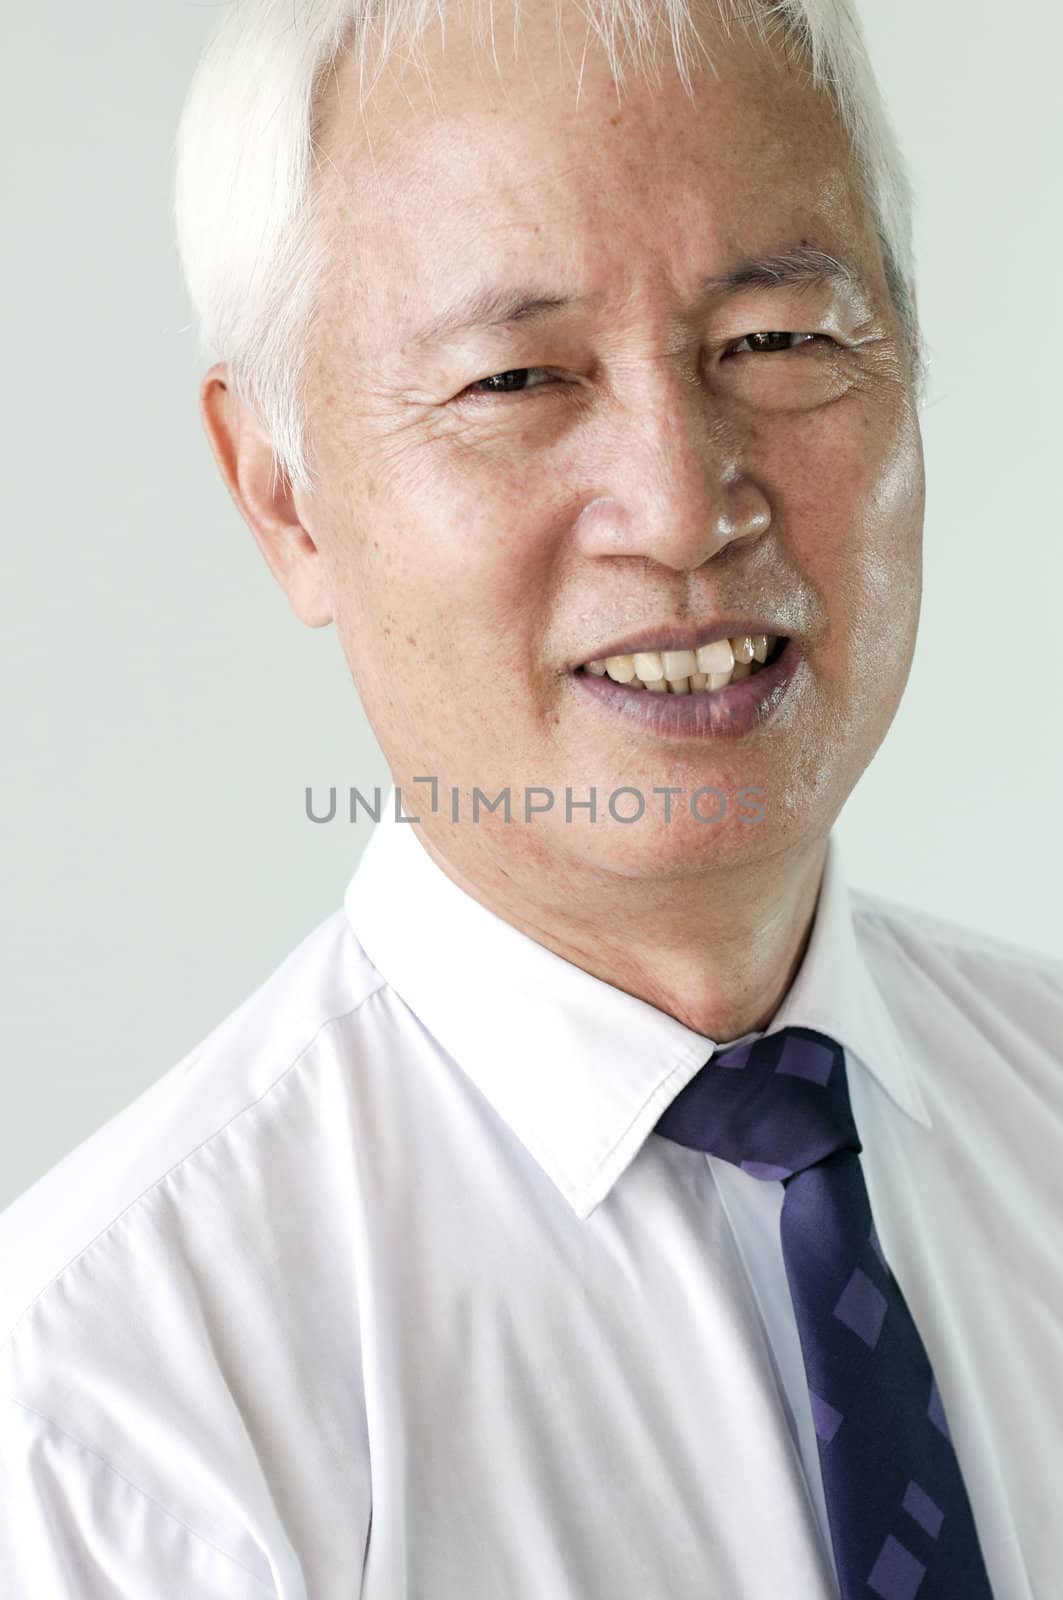 senior asian business man by yuliang11